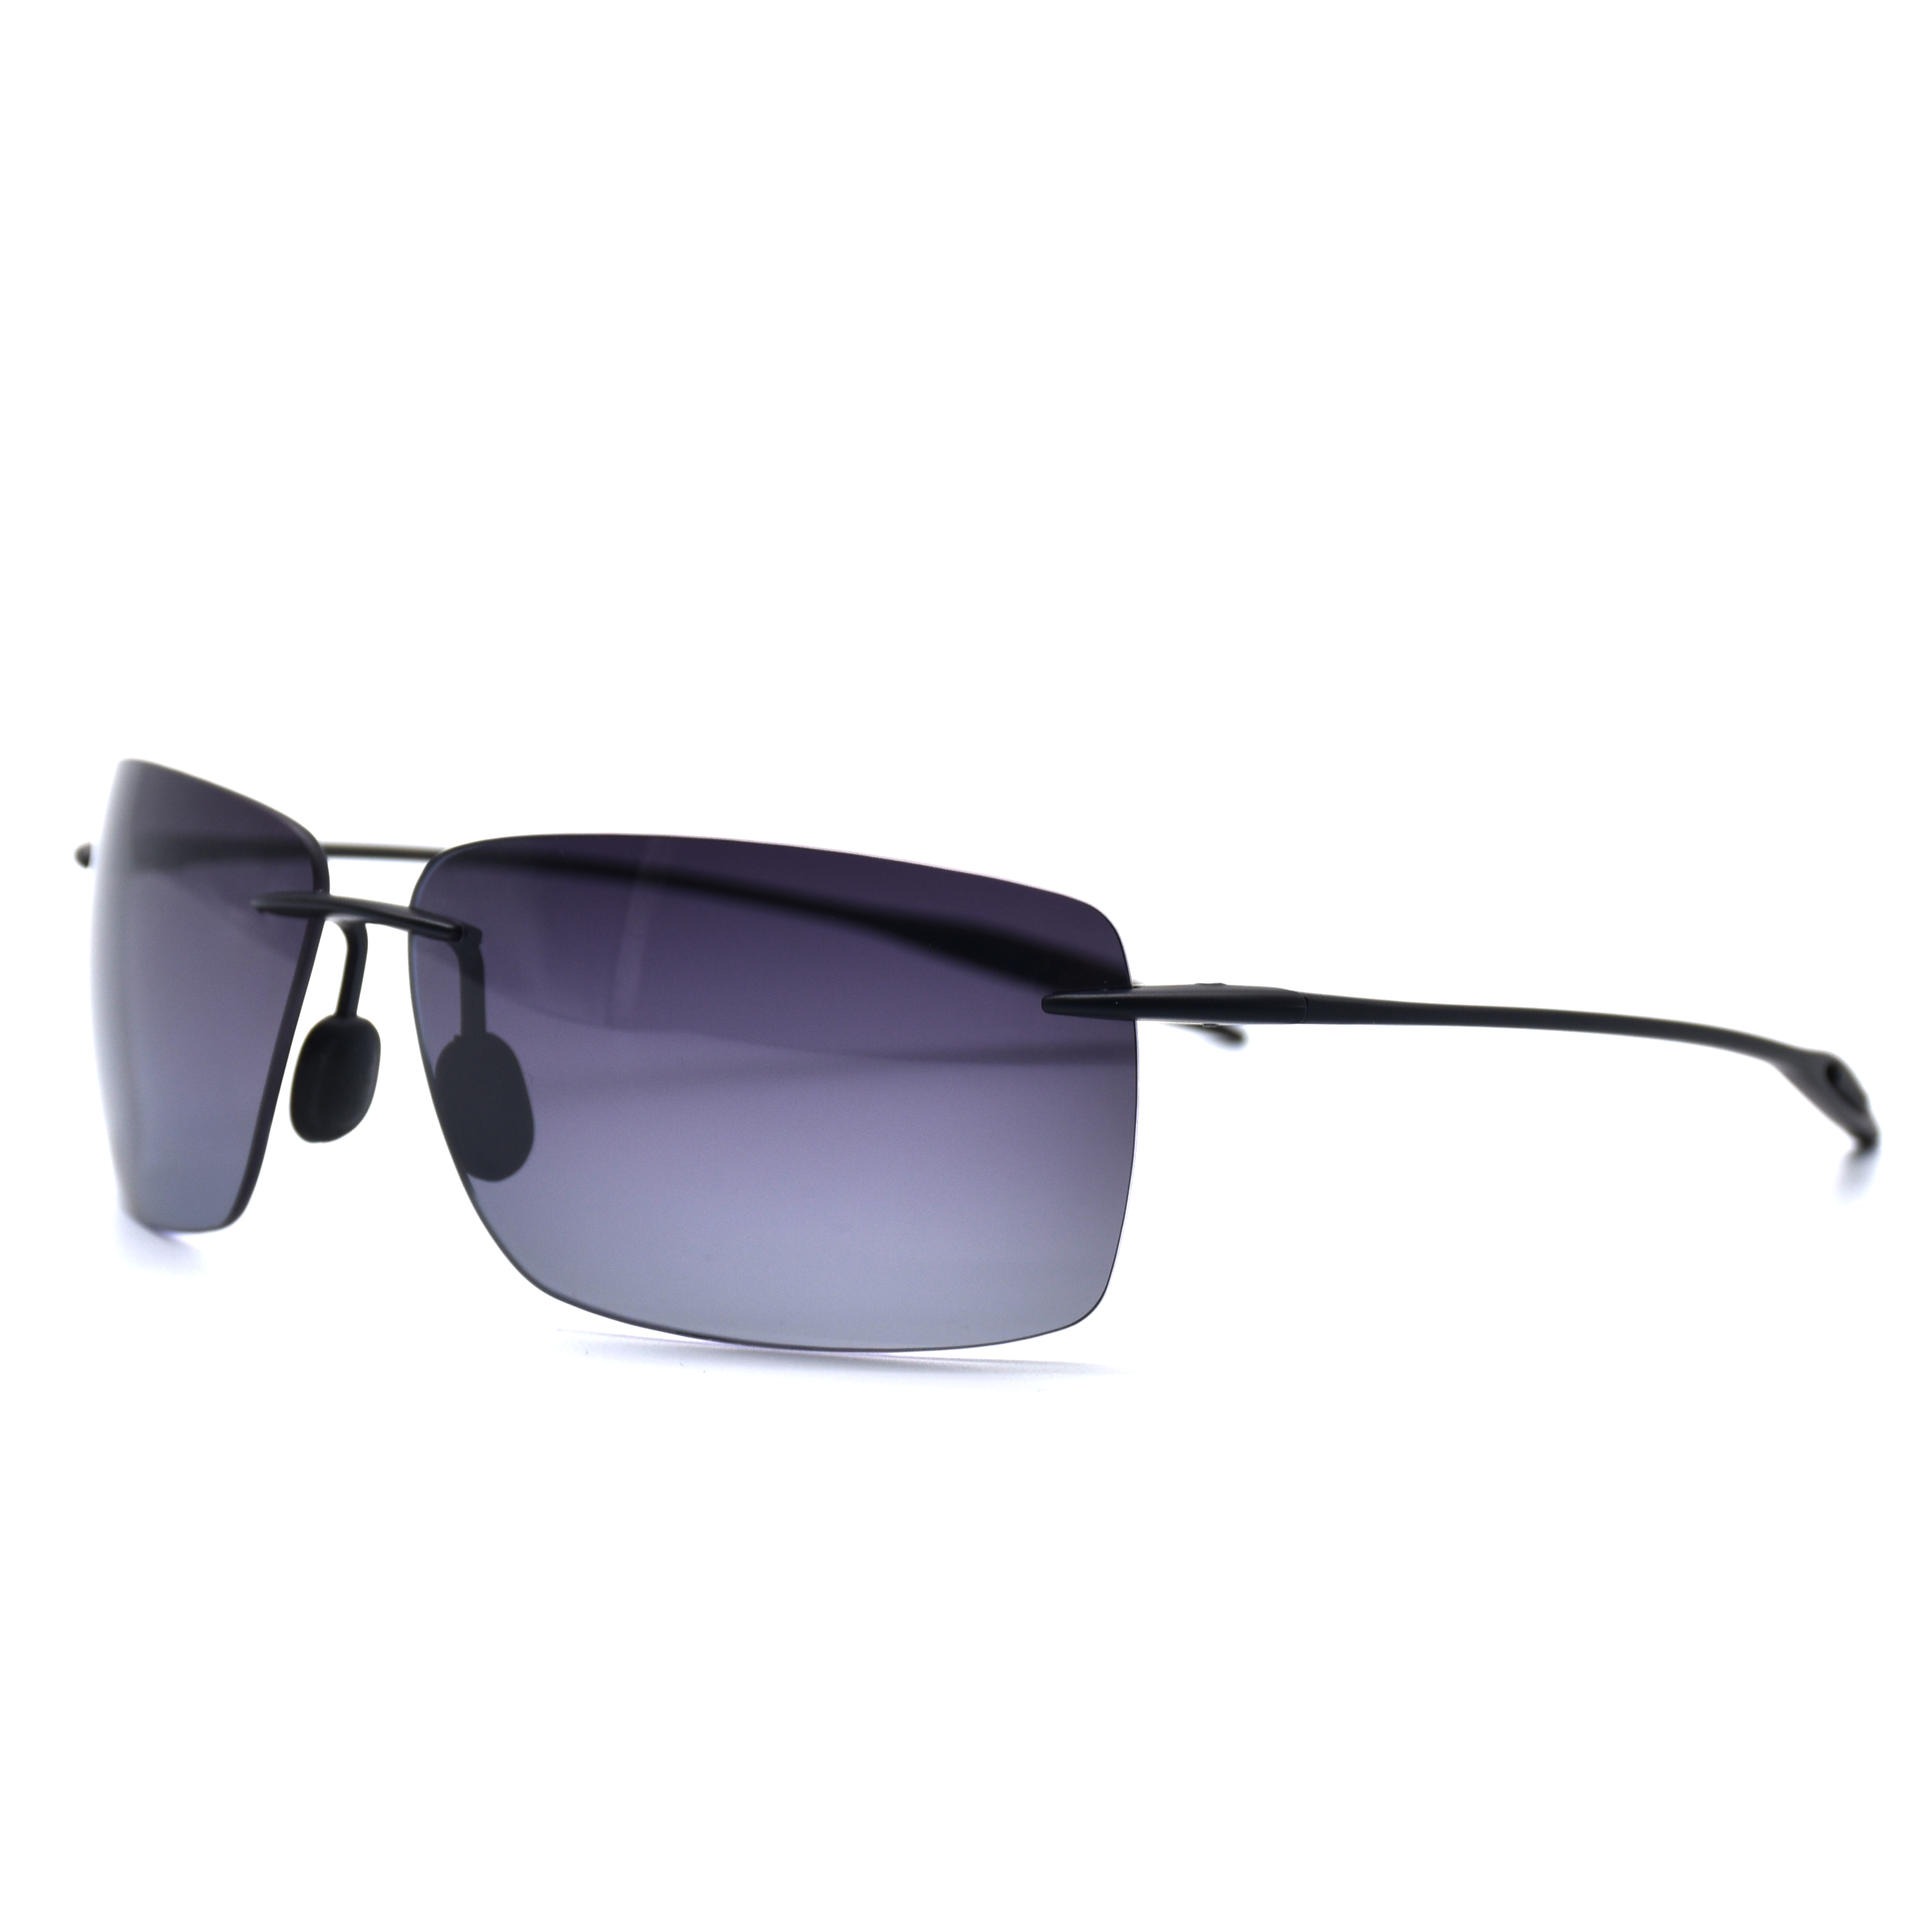 TR90超轻无框偏光太阳眼镜 休闲时尚太阳眼镜 骑行跑步防风眼镜4